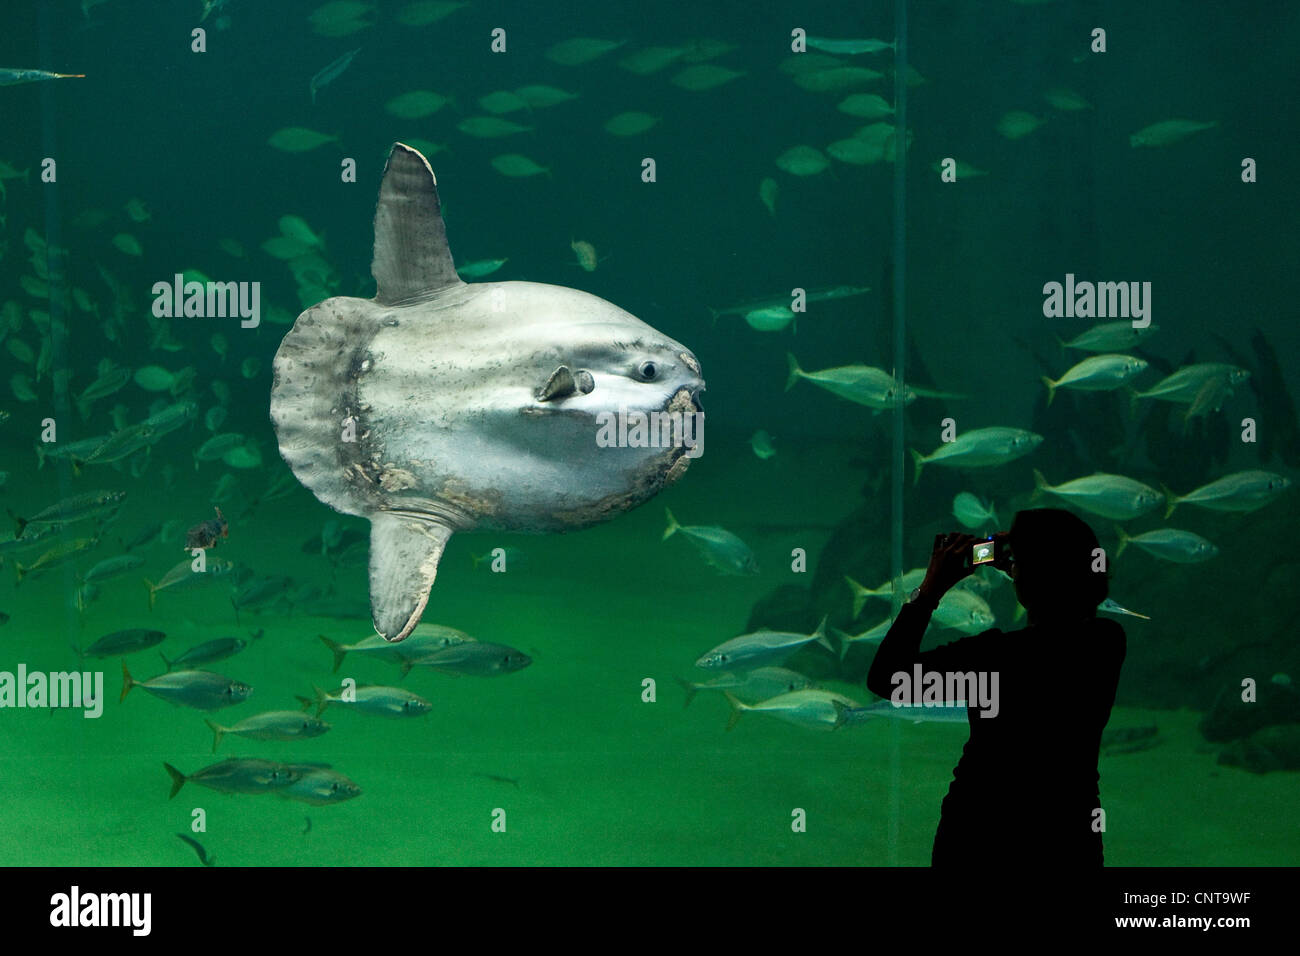 Ocean poisson-lune (Mola mola), syndicat de prendre des photos de poissons osseux le plus connu dans le monde Banque D'Images